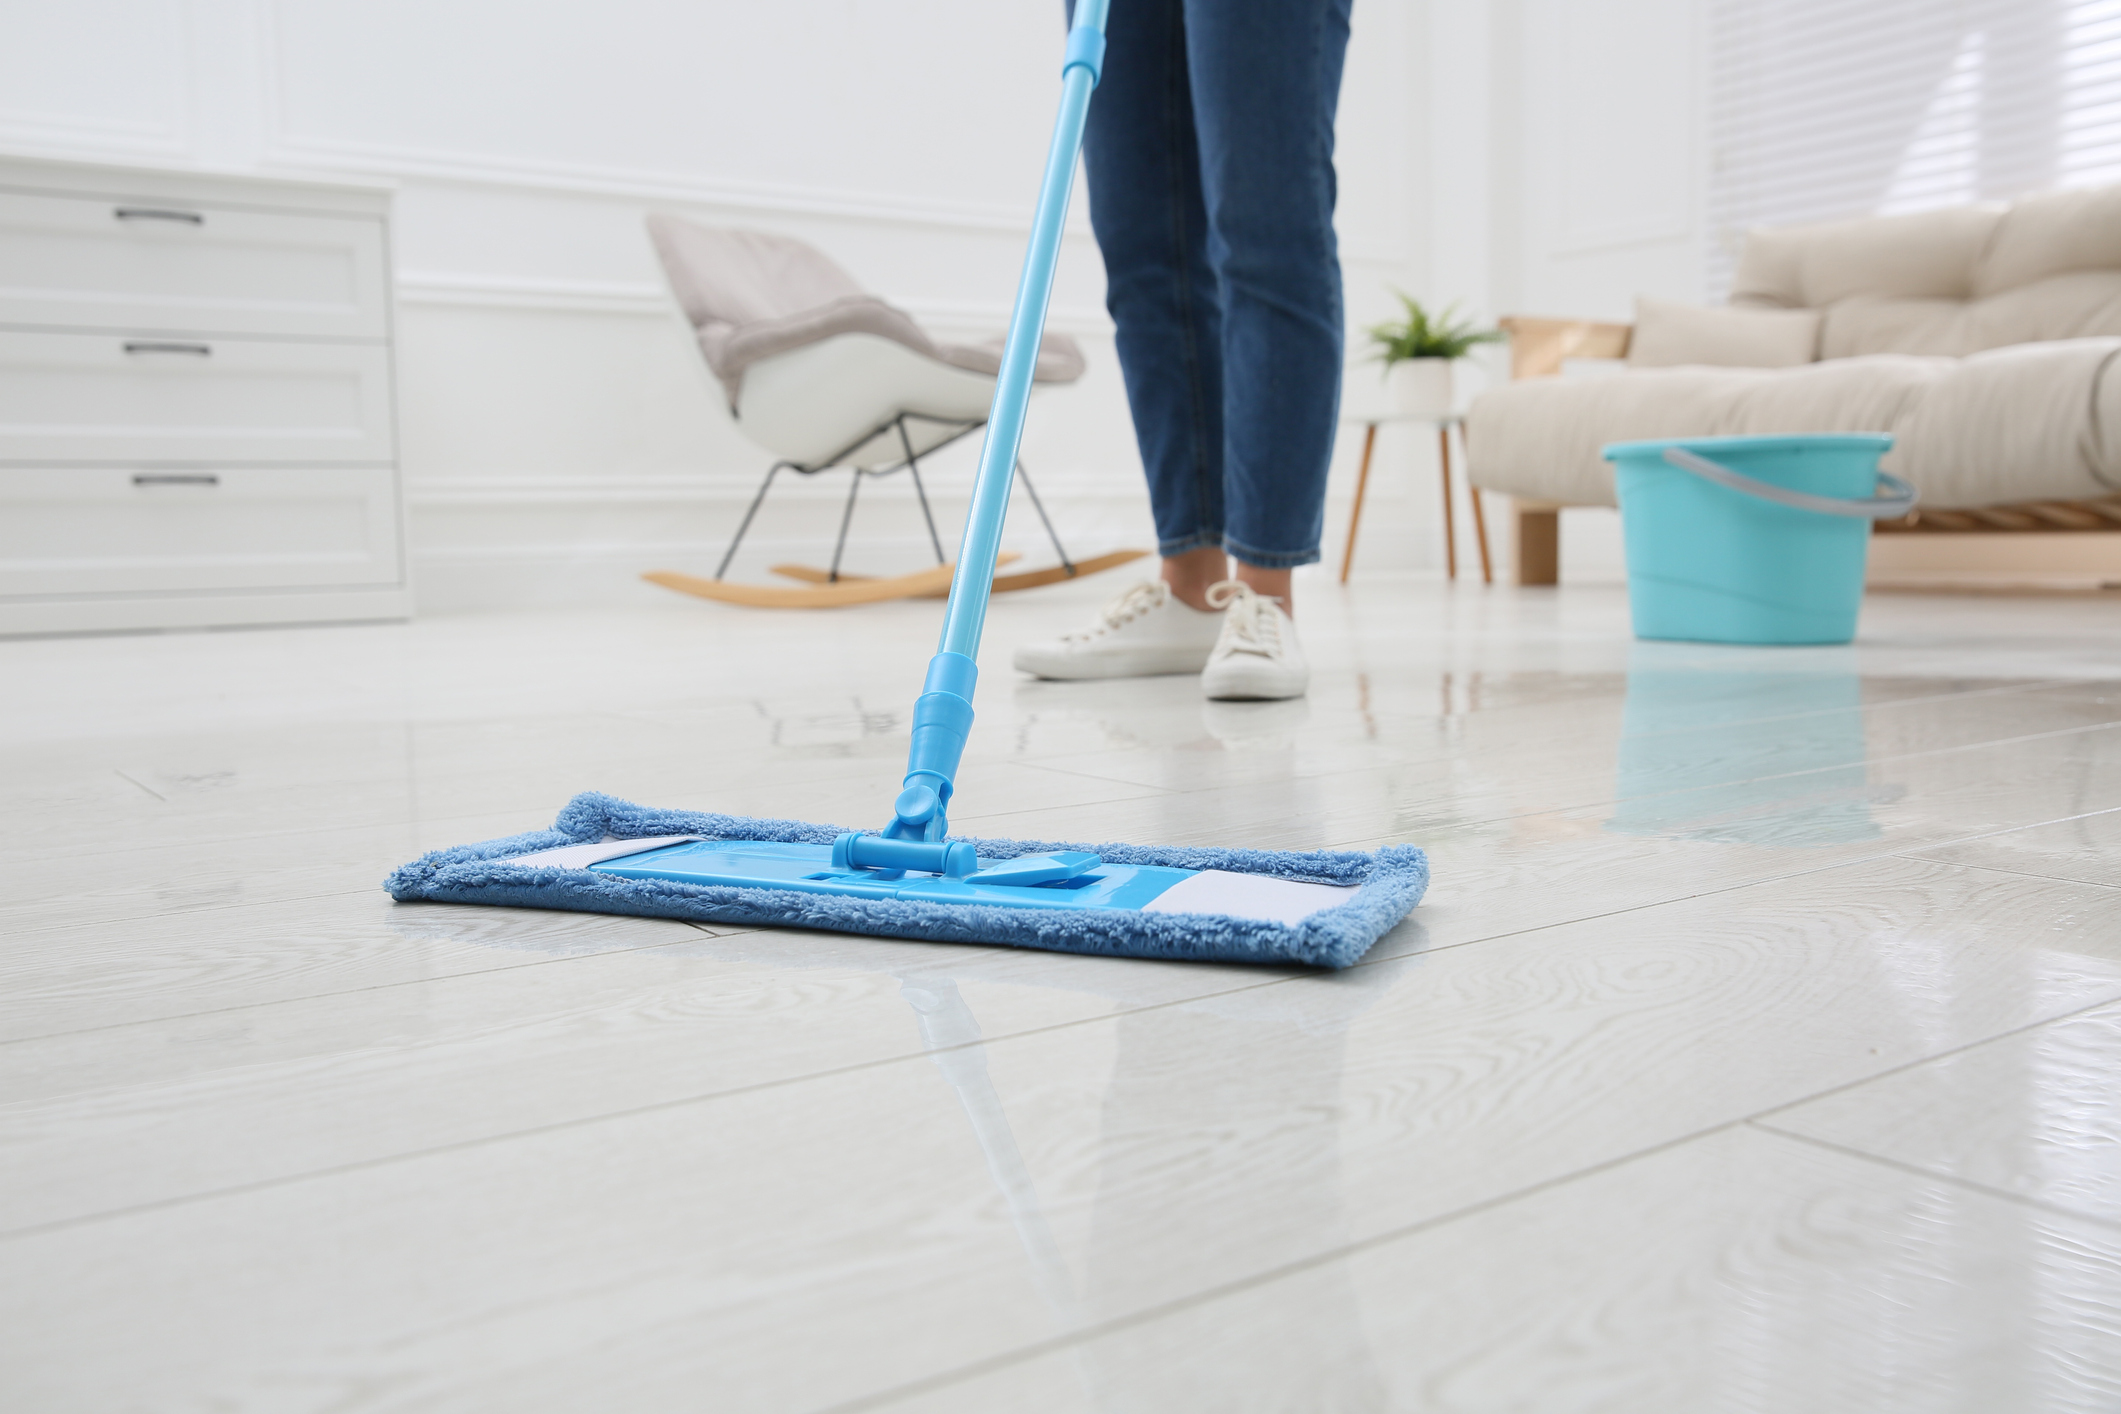 Čist dom: 7 loših navika prilikom čišćenja koje treba prevazići